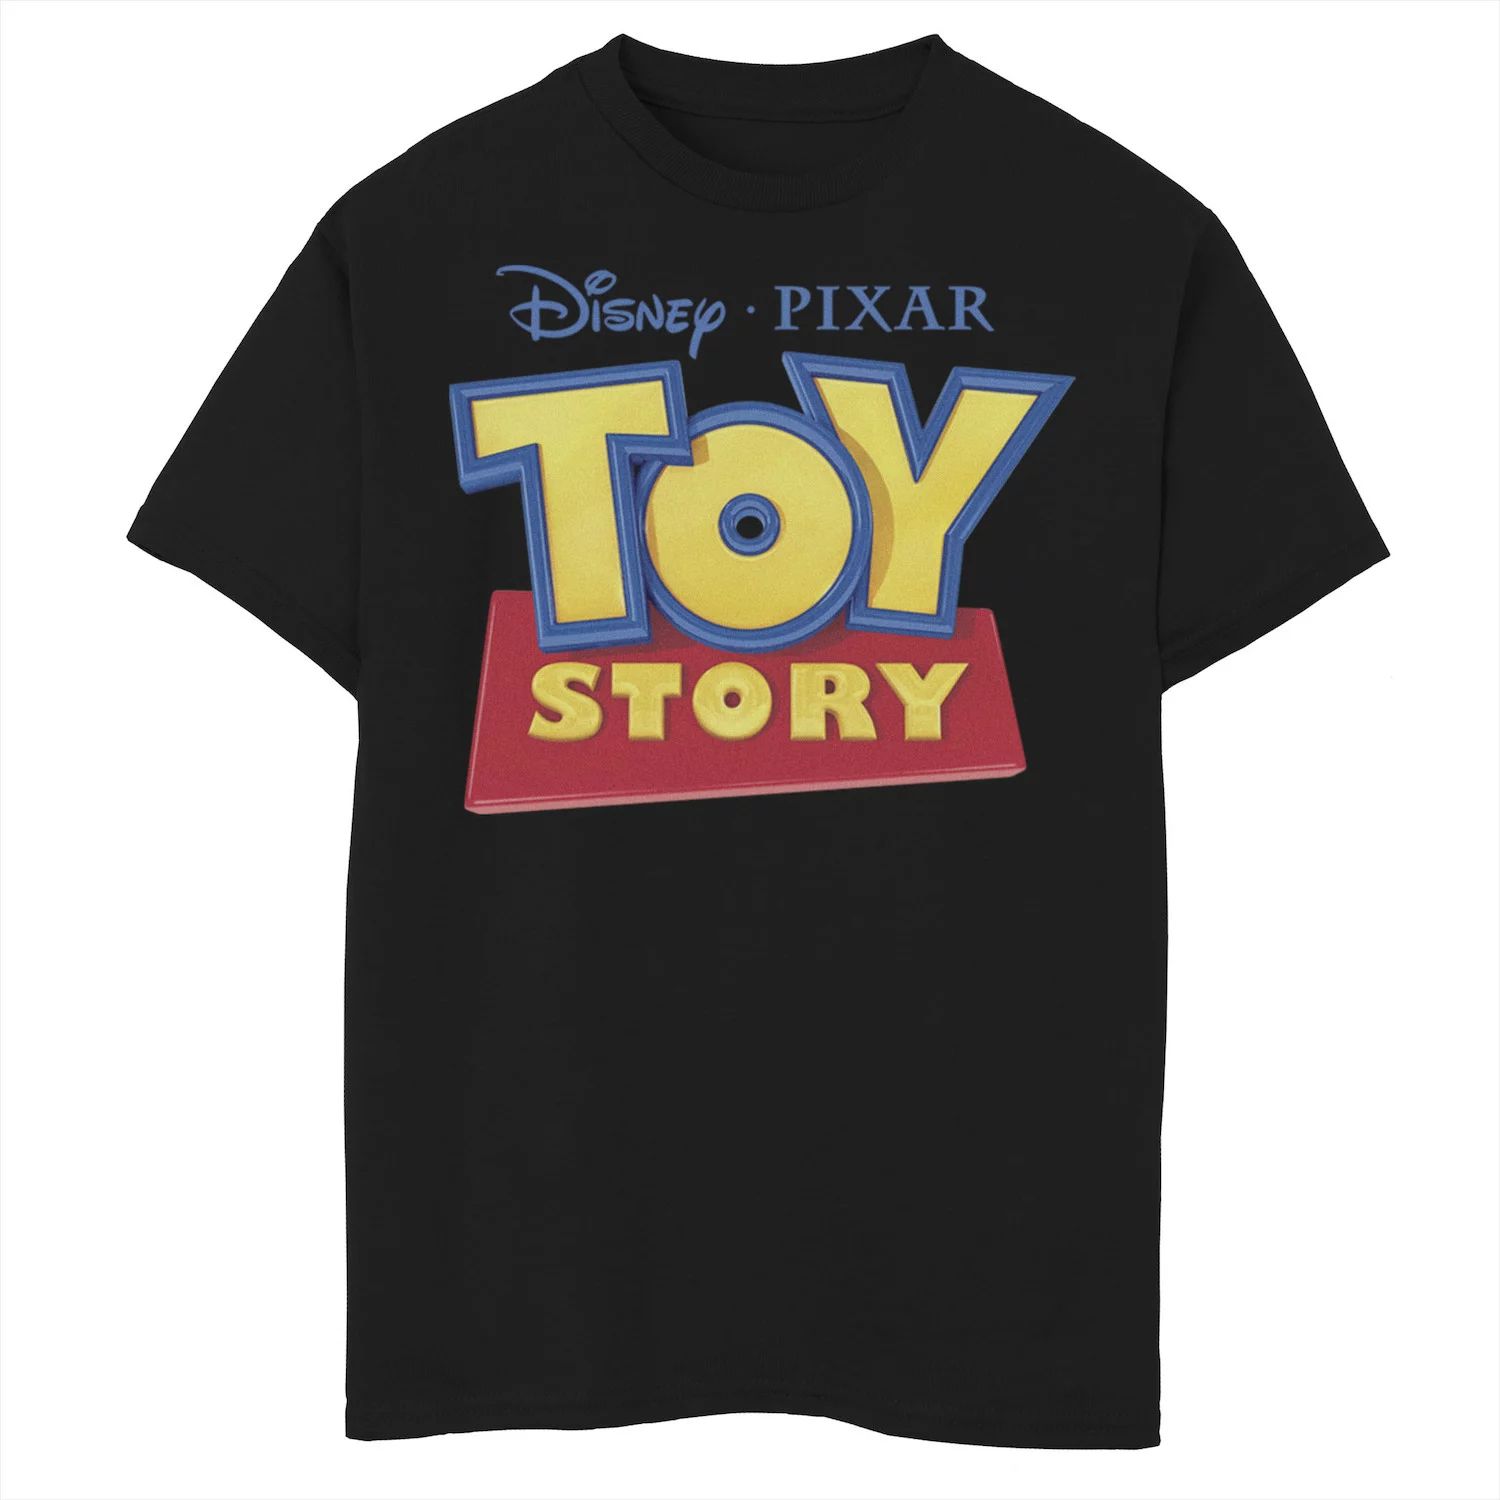 Футболка с логотипом фильма «История игрушек» для мальчиков 8–20 лет Disney/Pixar Disney / Pixar мужская футболка с логотипом фильма хороший динозавр disney pixar